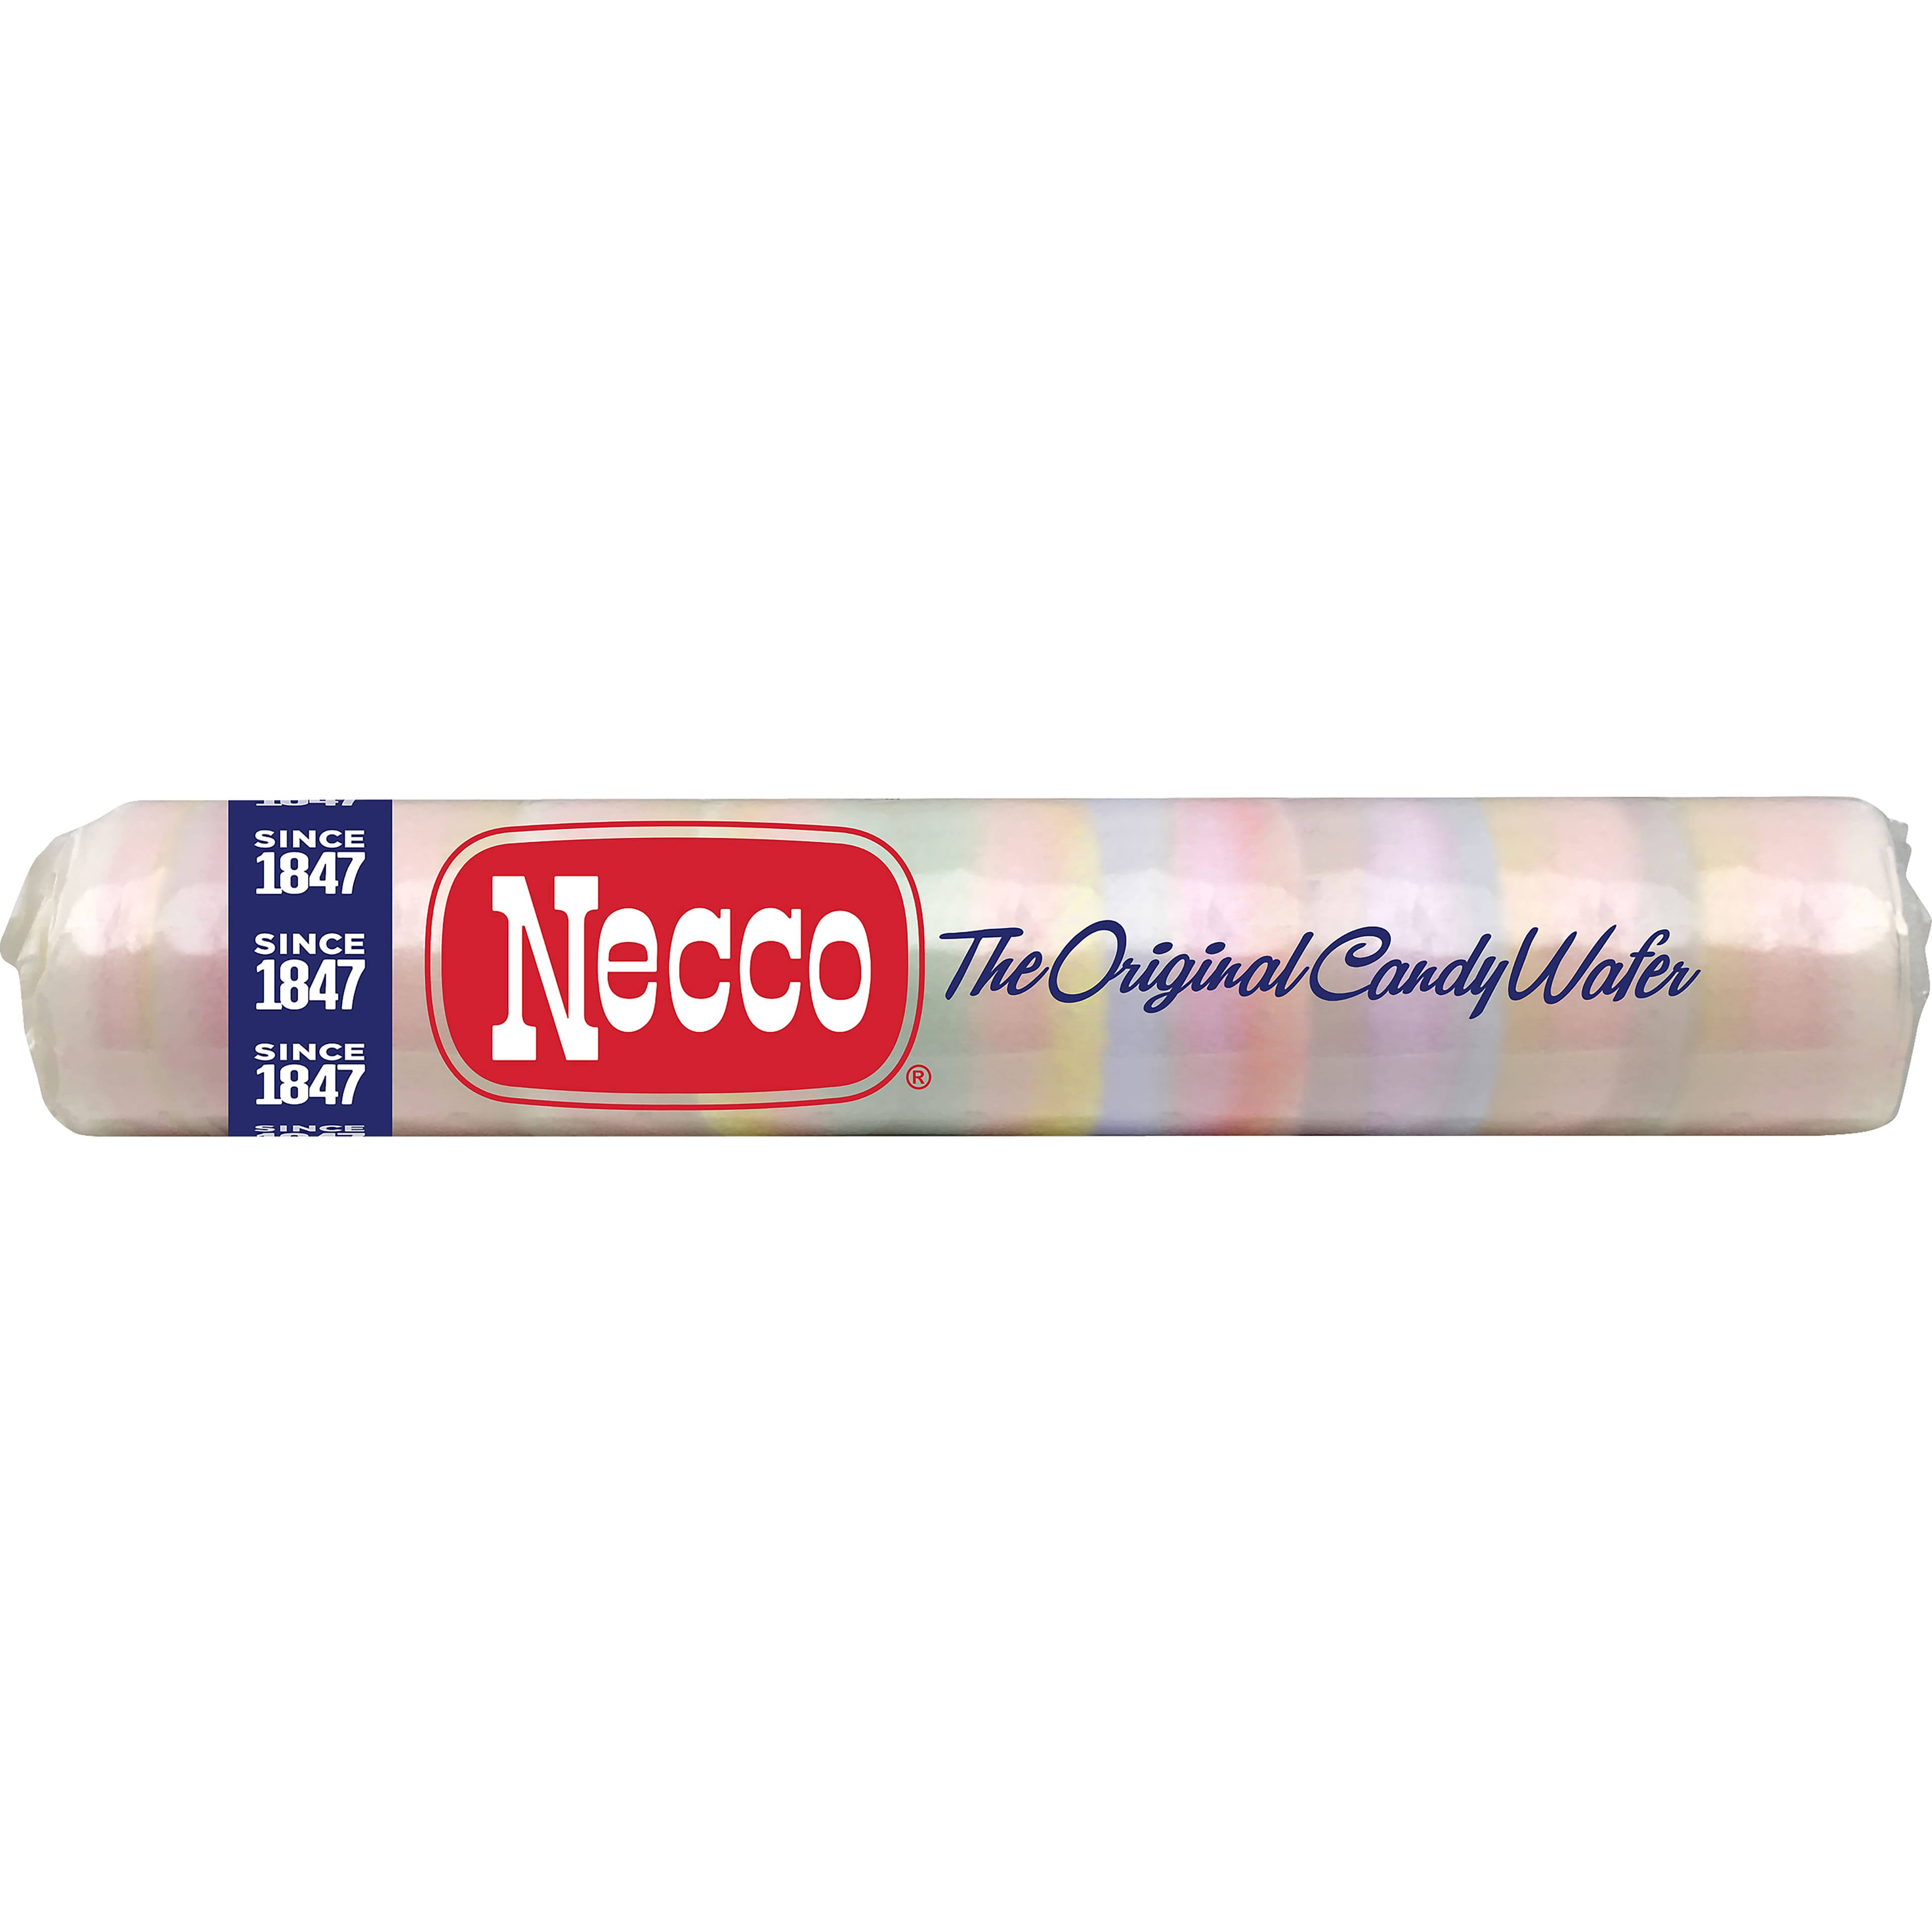 Necco Candy Wafer, The Original - 2 oz